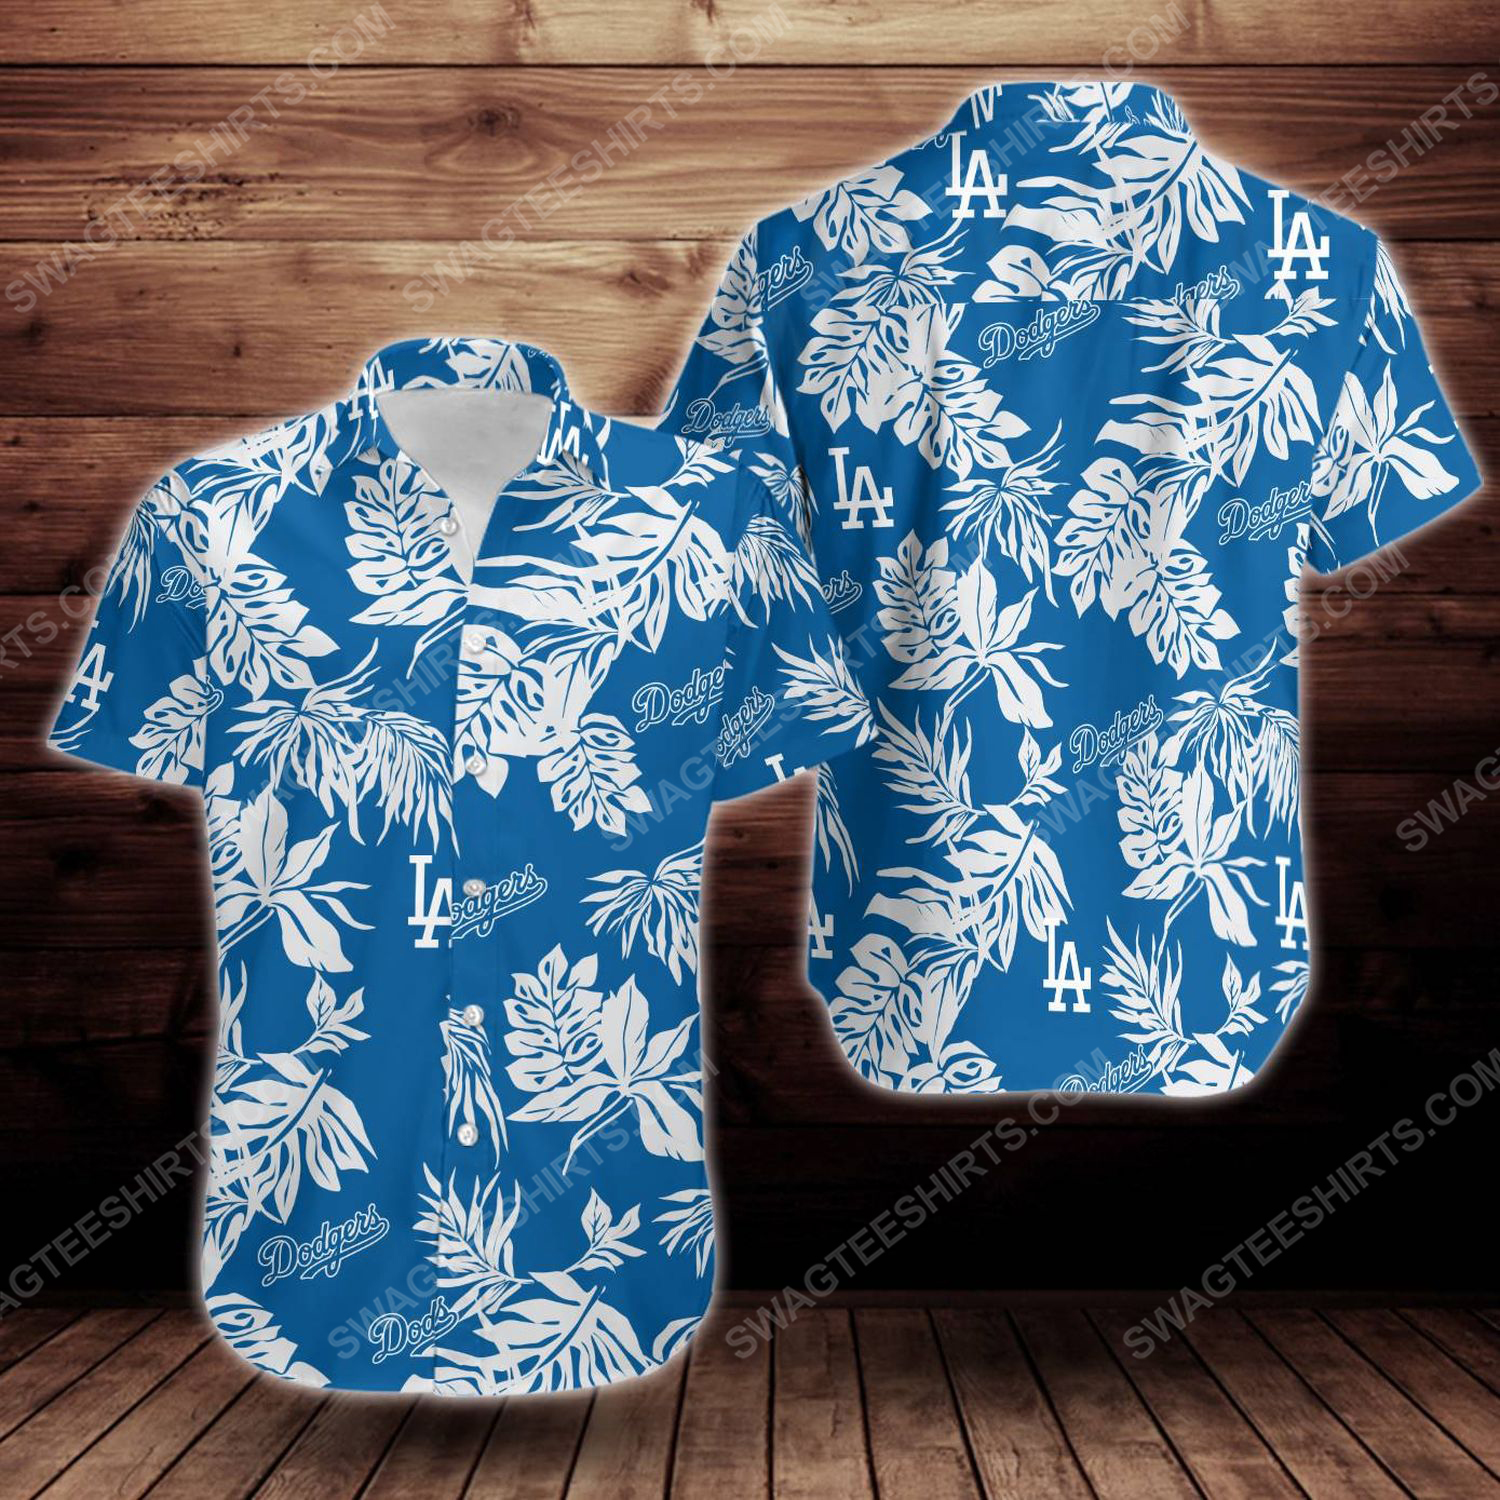 Tropical summer los angeles dodgers short sleeve hawaiian shirt 1